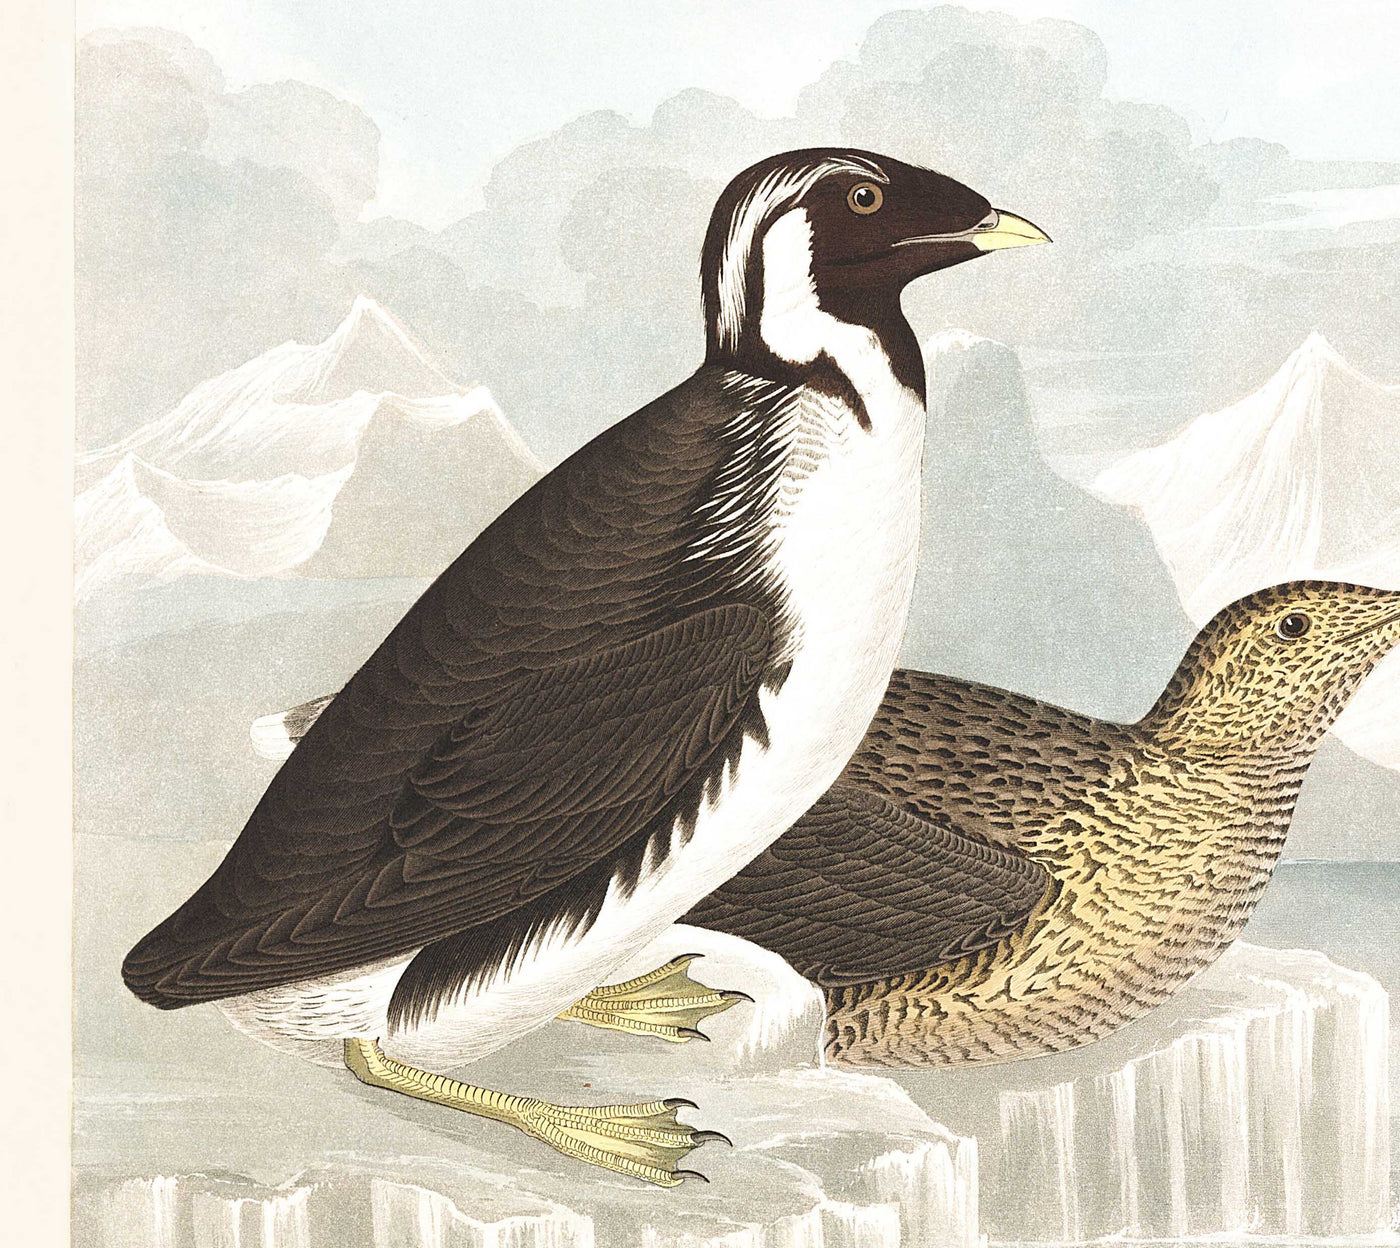 Trottellumme & Auk (Seevögel) von John James Audobon, 1827 - Personalisierte Kunst